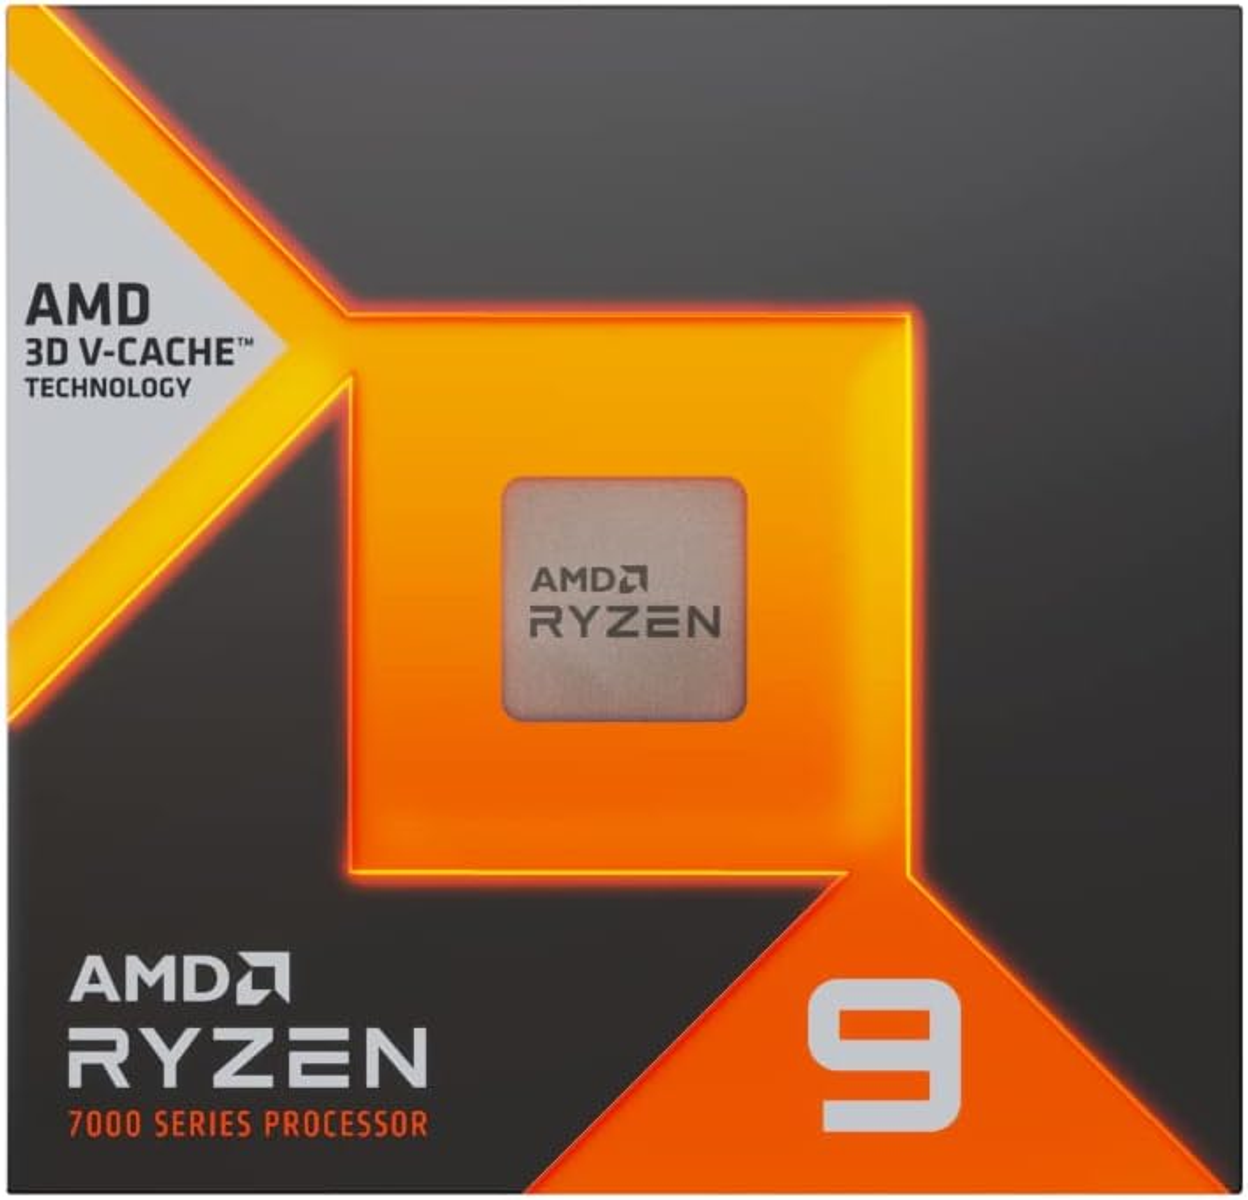 Ryzen 7900X3D AMD Schwarz 9 Prozessor,